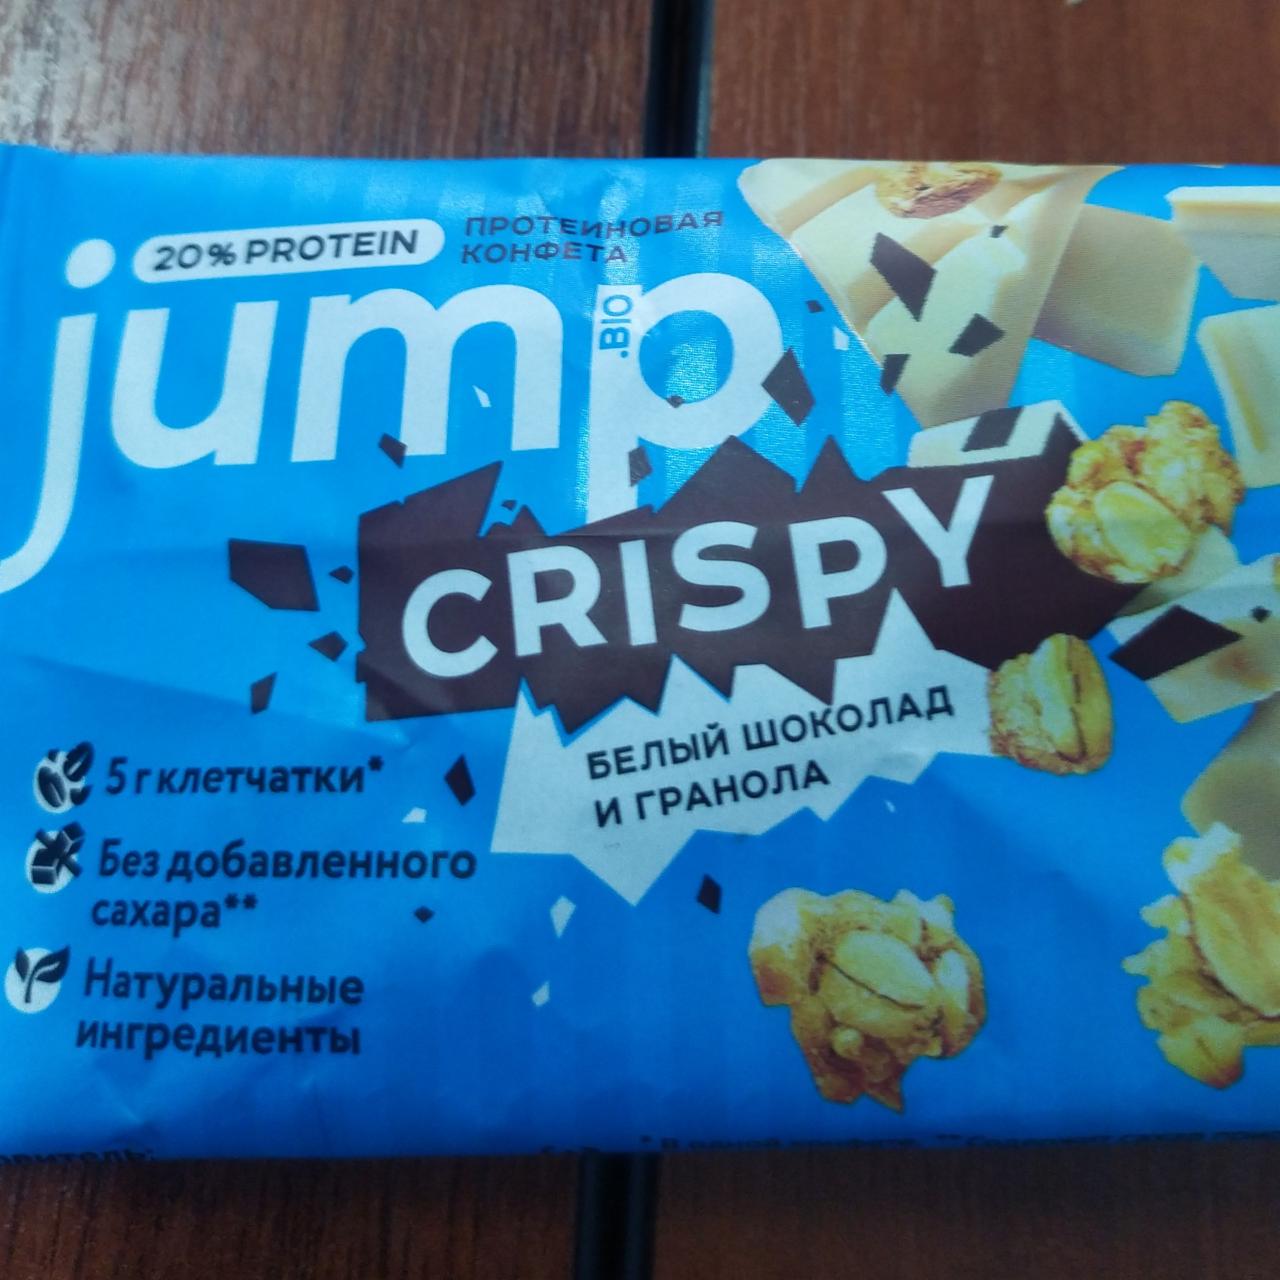 Фото - Протеиновые конфеты белый шоколад и гранола Jump bio Crispy